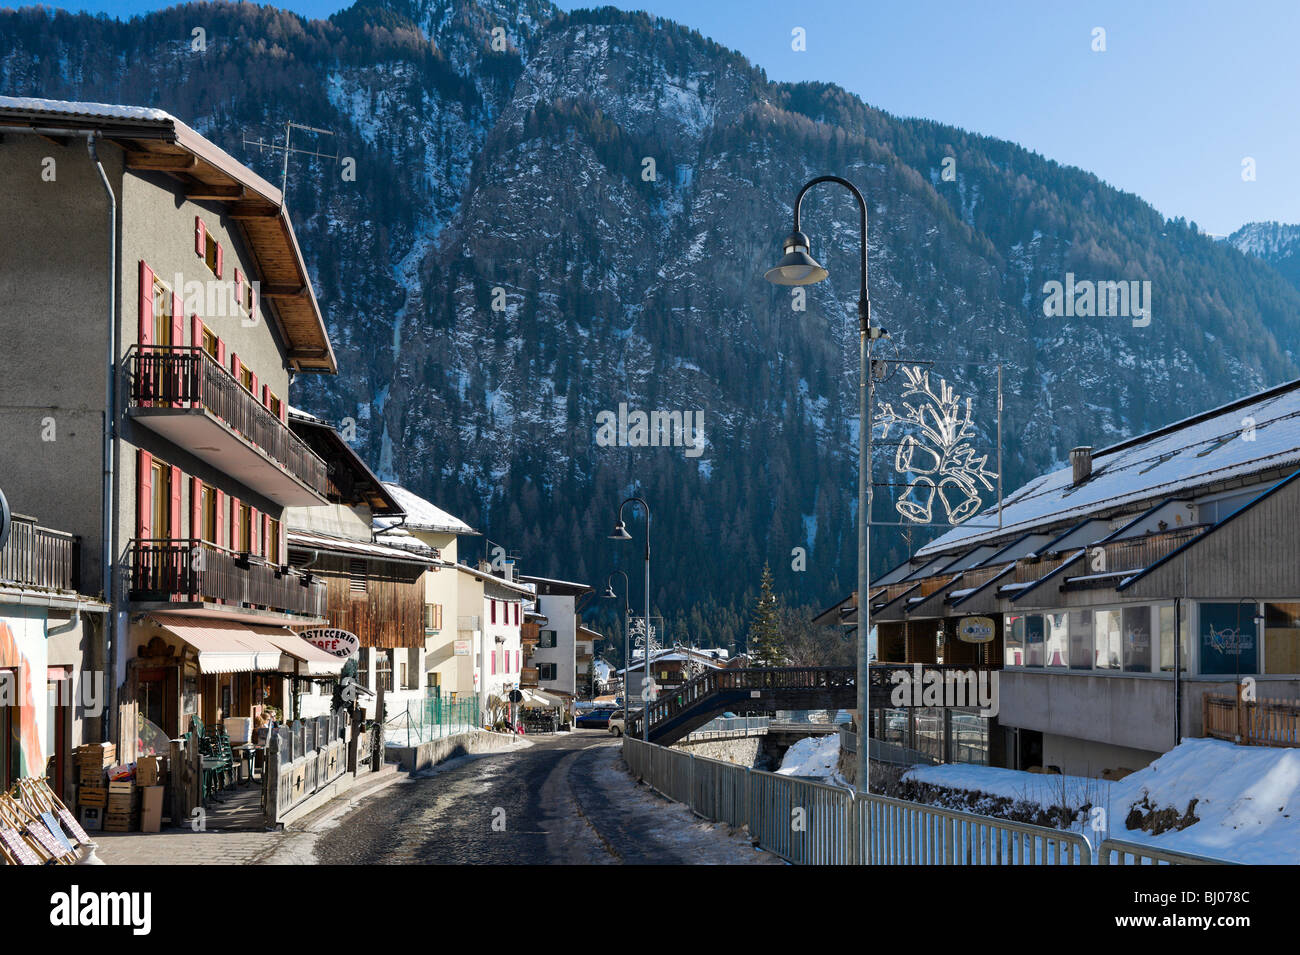 The village centre, Campitello, Val di Fassa, Dolomites, Italy Stock Photo